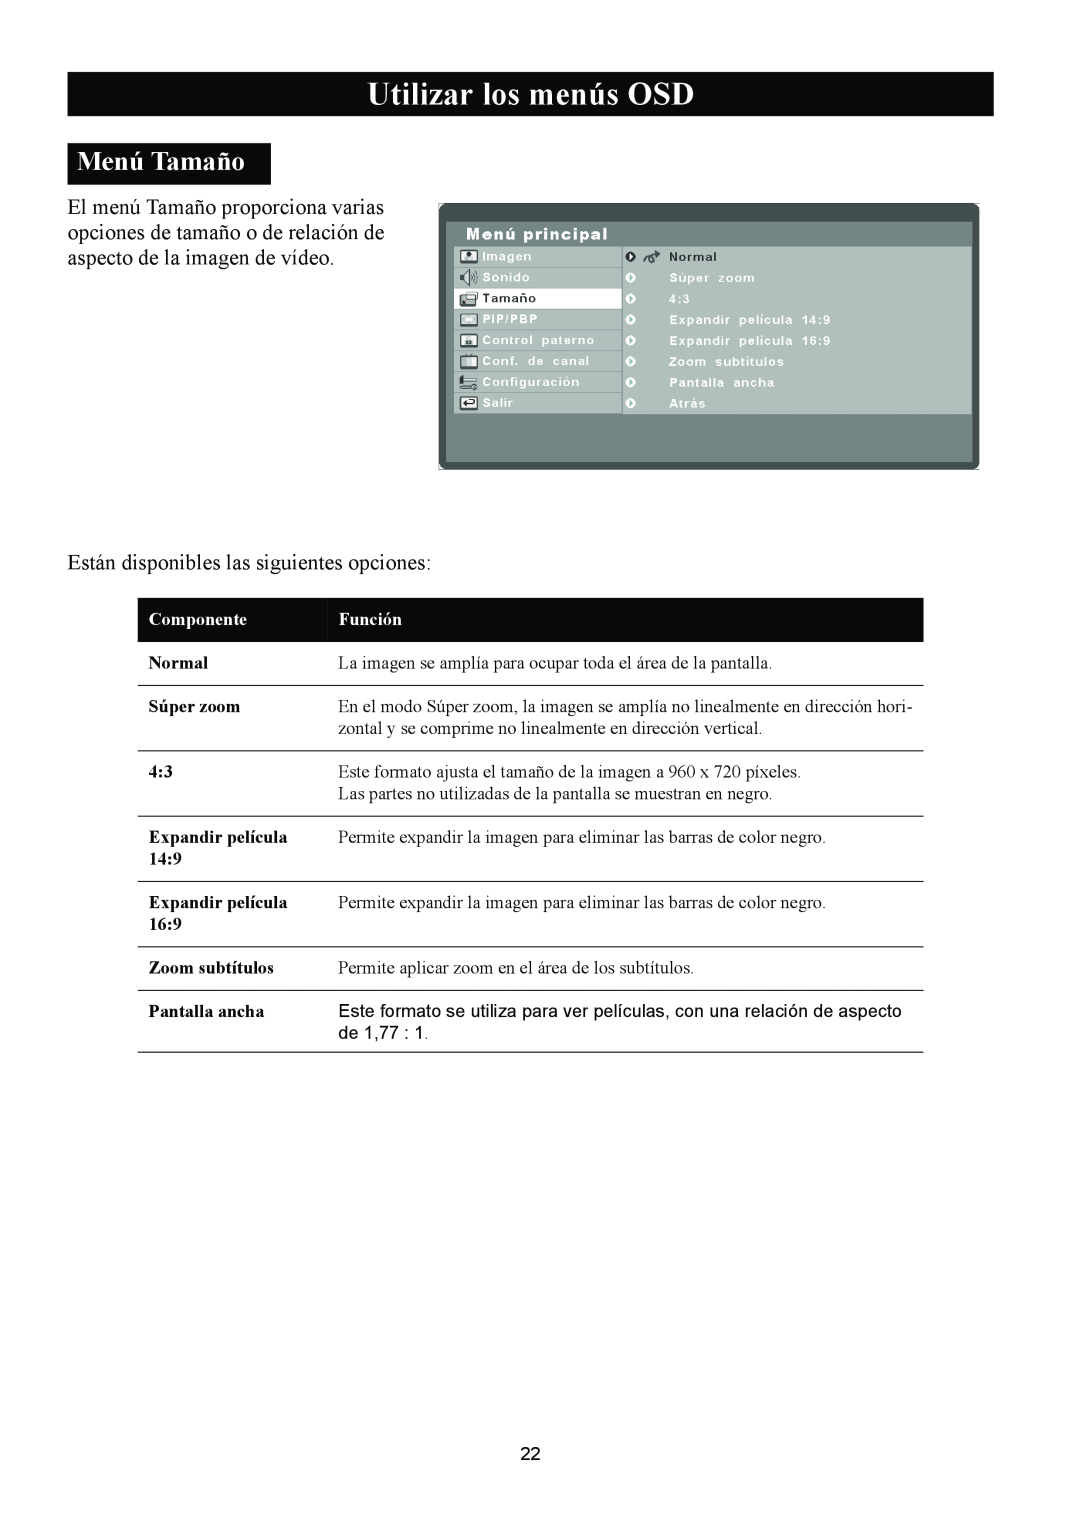 Magnavox 50ML8105D/17 Menú Tamaño, Utilizar los menús OSD, Están disponibles las siguientes opciones, Componente, Función 